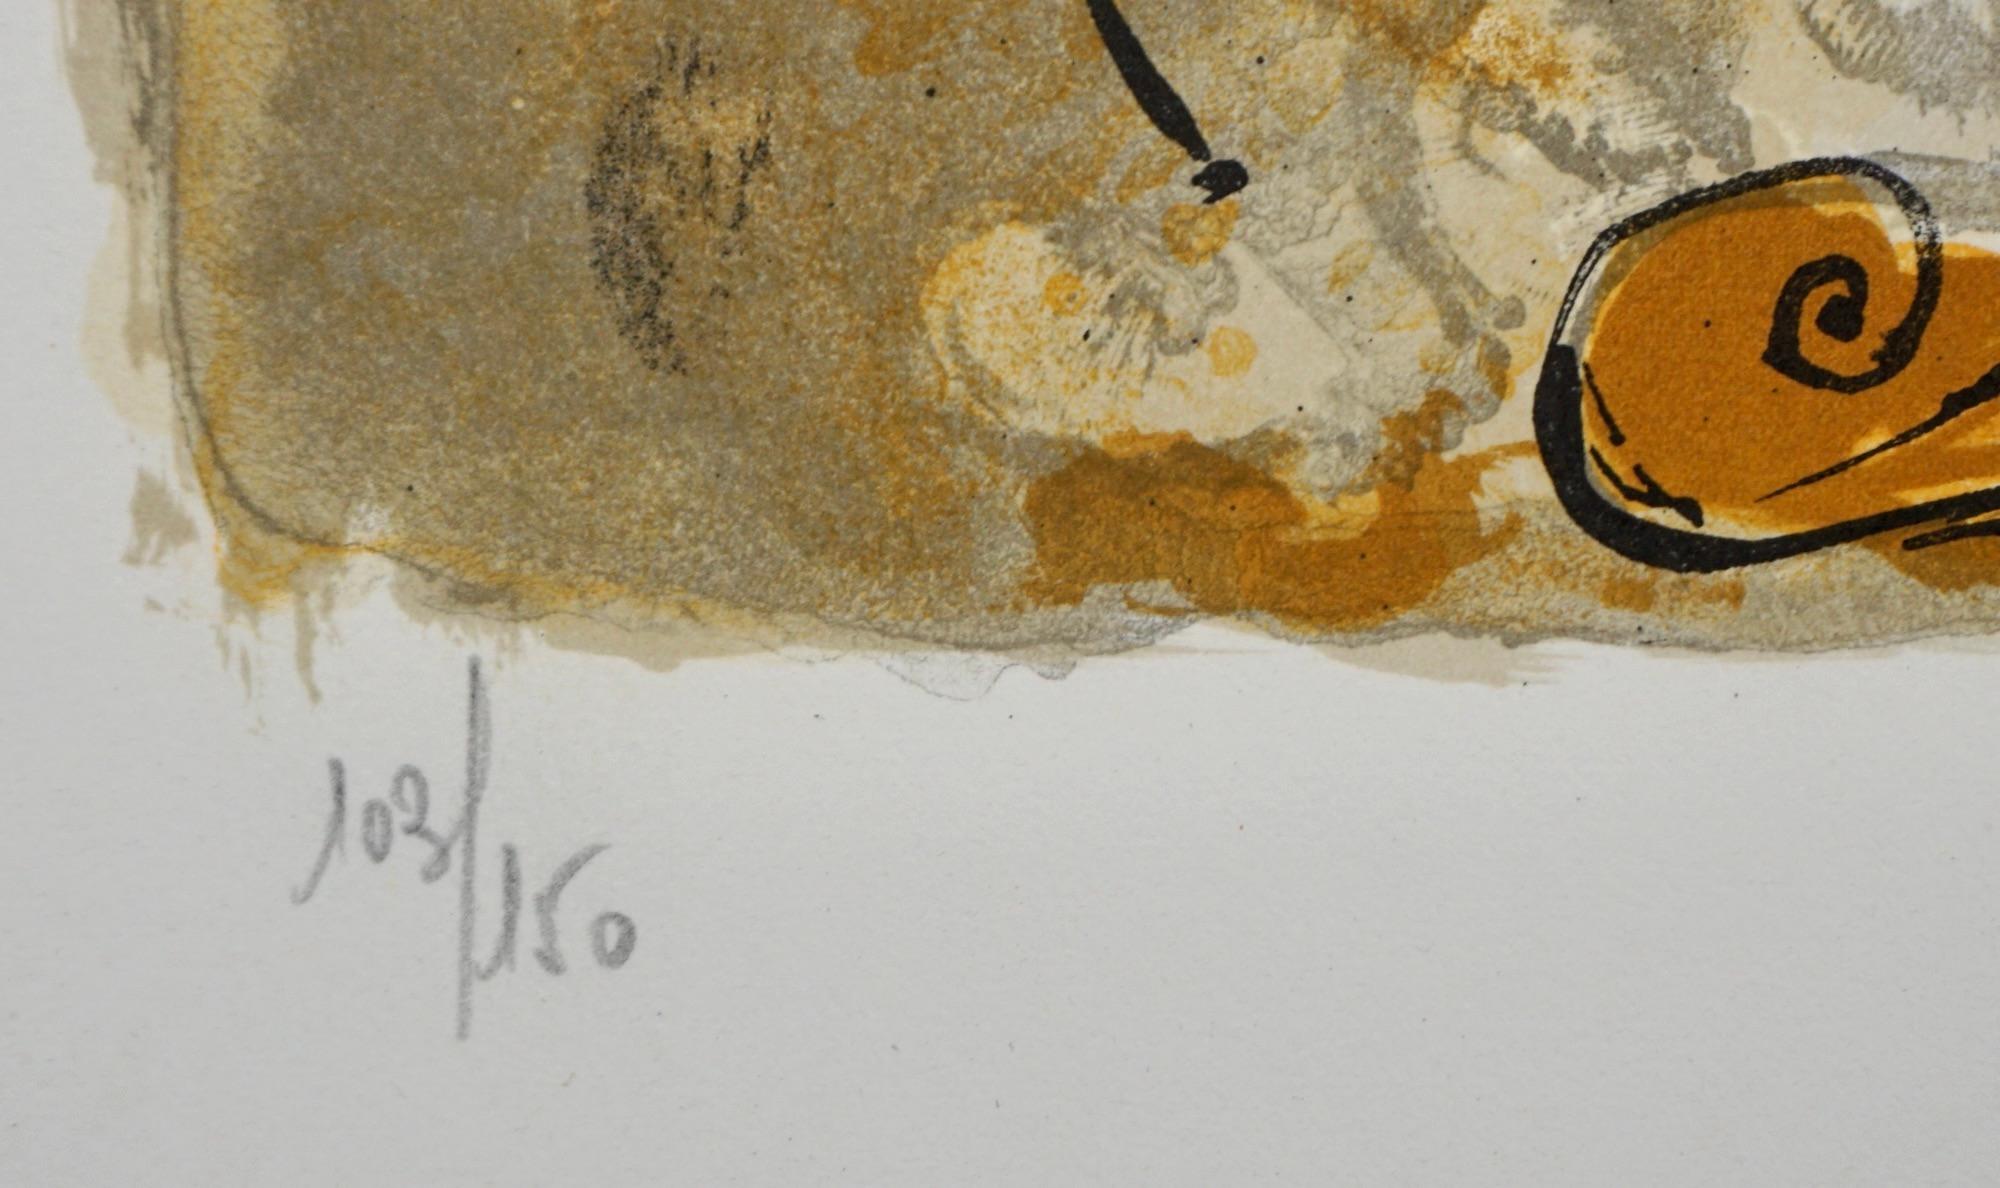 KÜNSTLER: Salvador Dali

TITEL: Self-Portrait Sonnenuhr

MEDIUM: Lithographie

SIGNIERT: Handsigniert 

AUFLAGENNUMMER:  103/150

MASSNAHMEN: 22.25